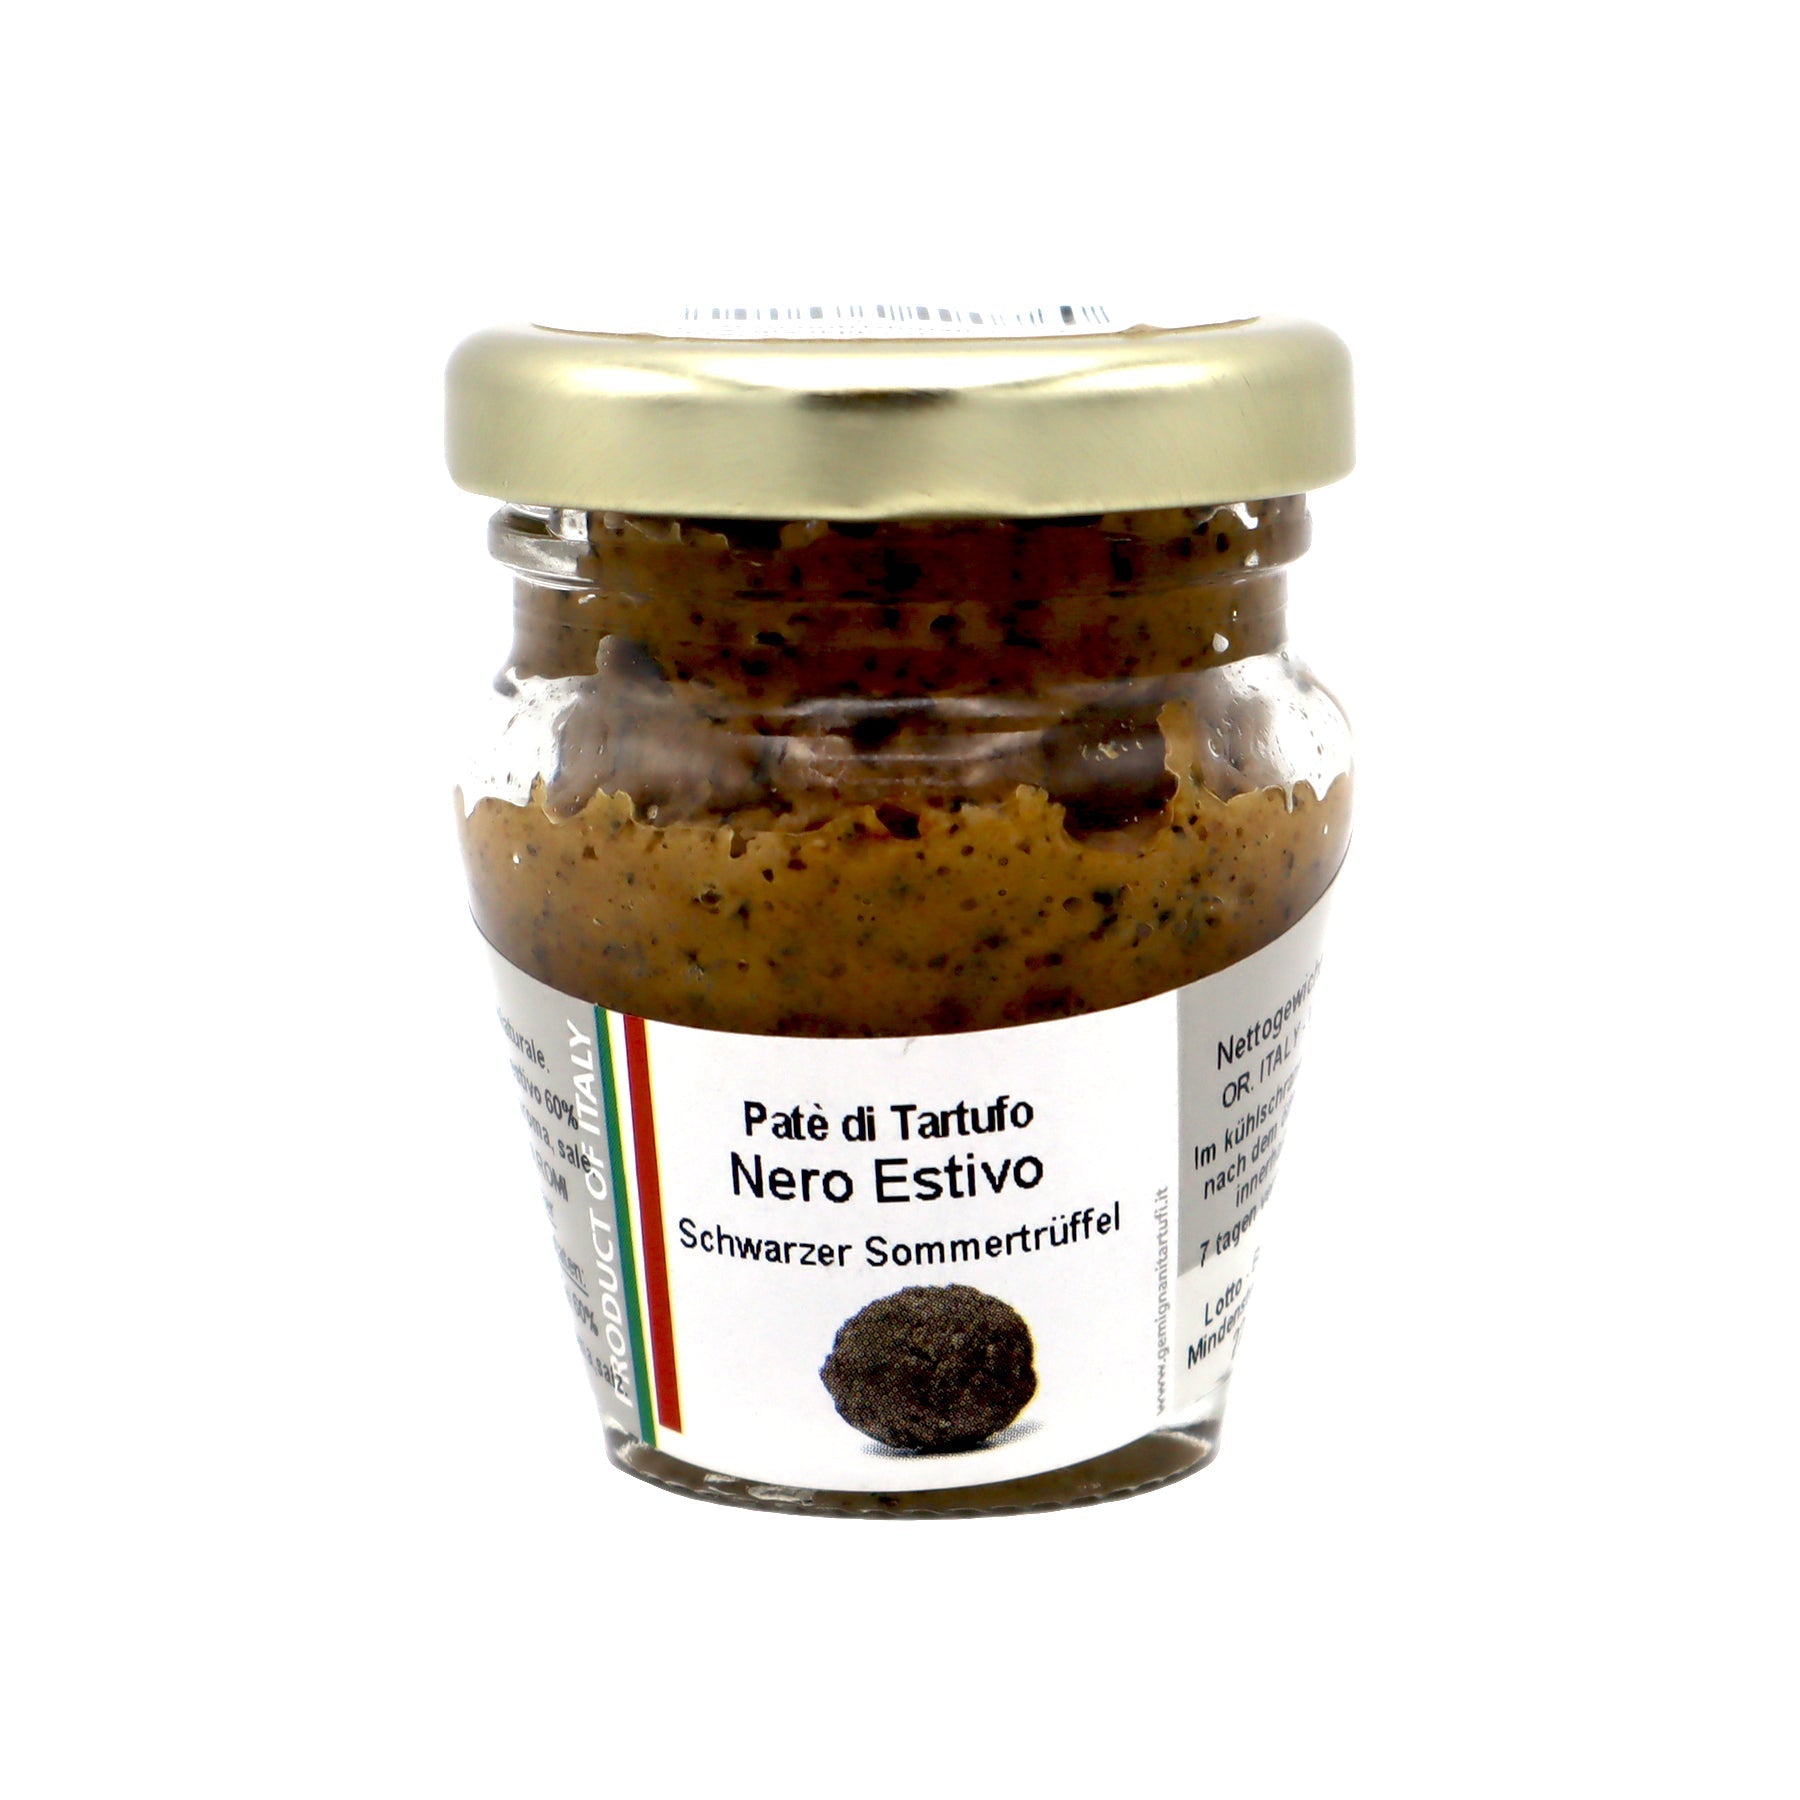 Patè di Tartufo - Trüffel-Pastete von schwarzen Sommer-Trüffeln (60% Trüffel) - Genussbote